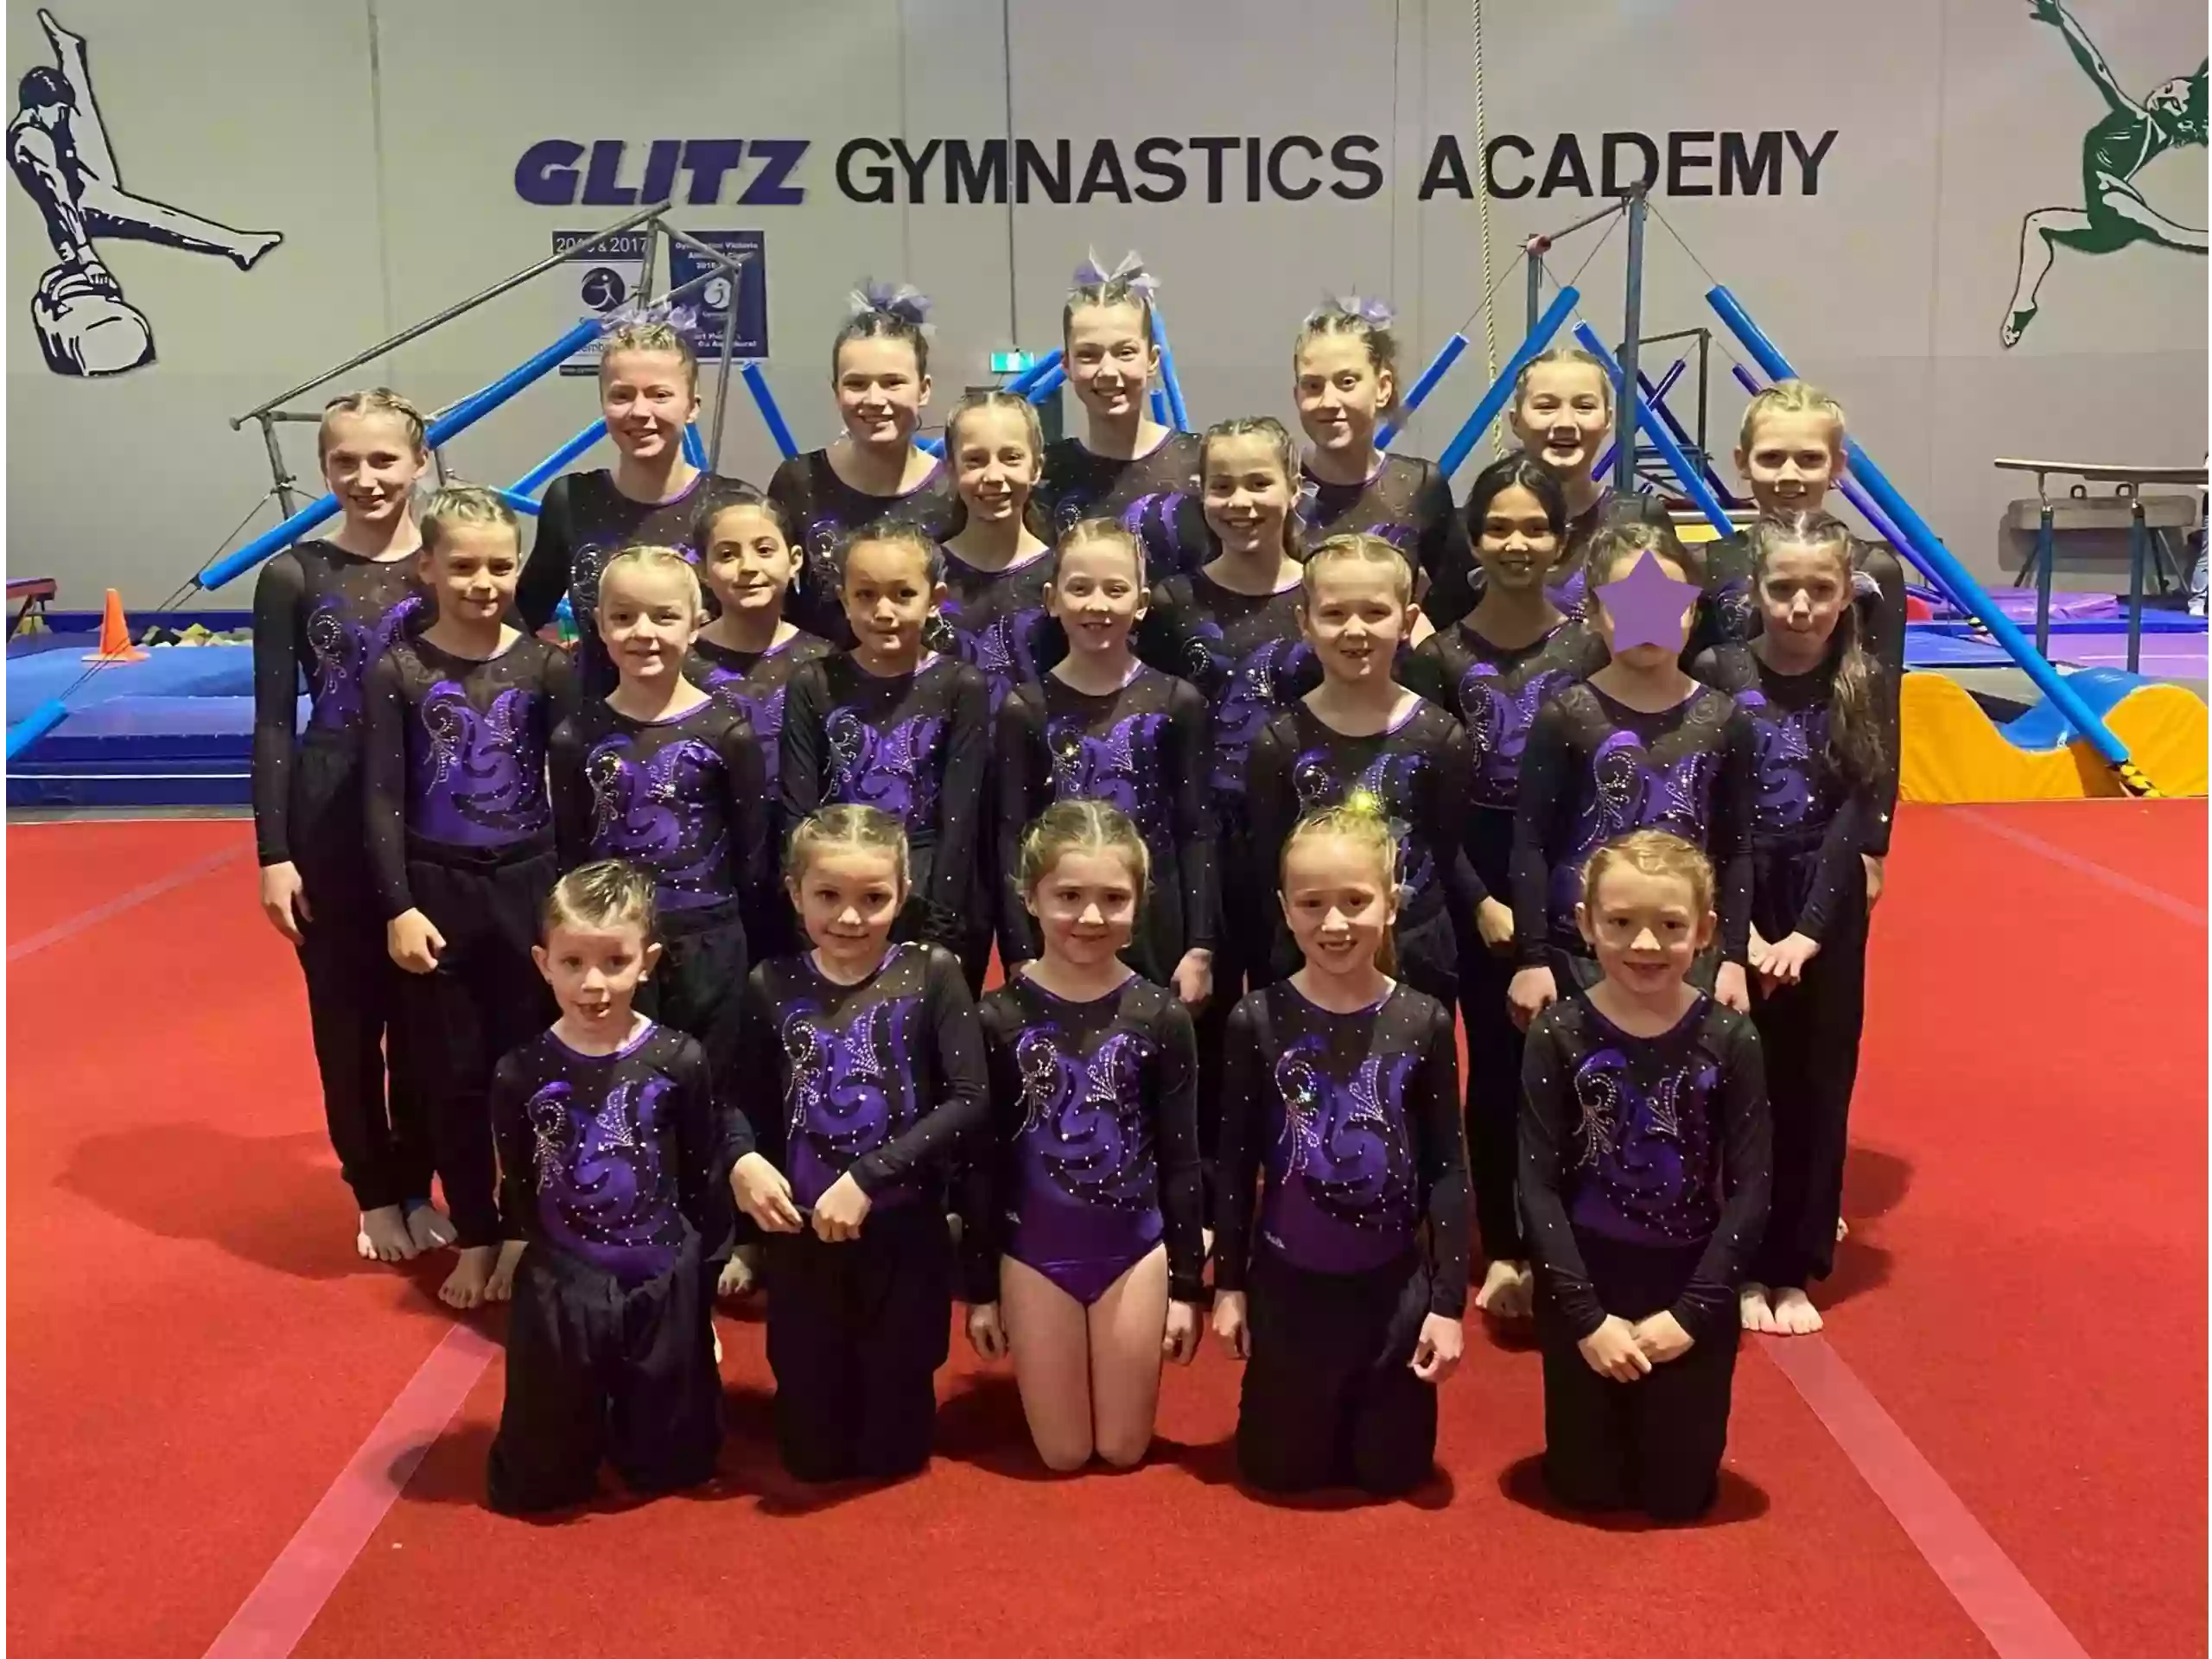 Glitz Gymnastics Academy